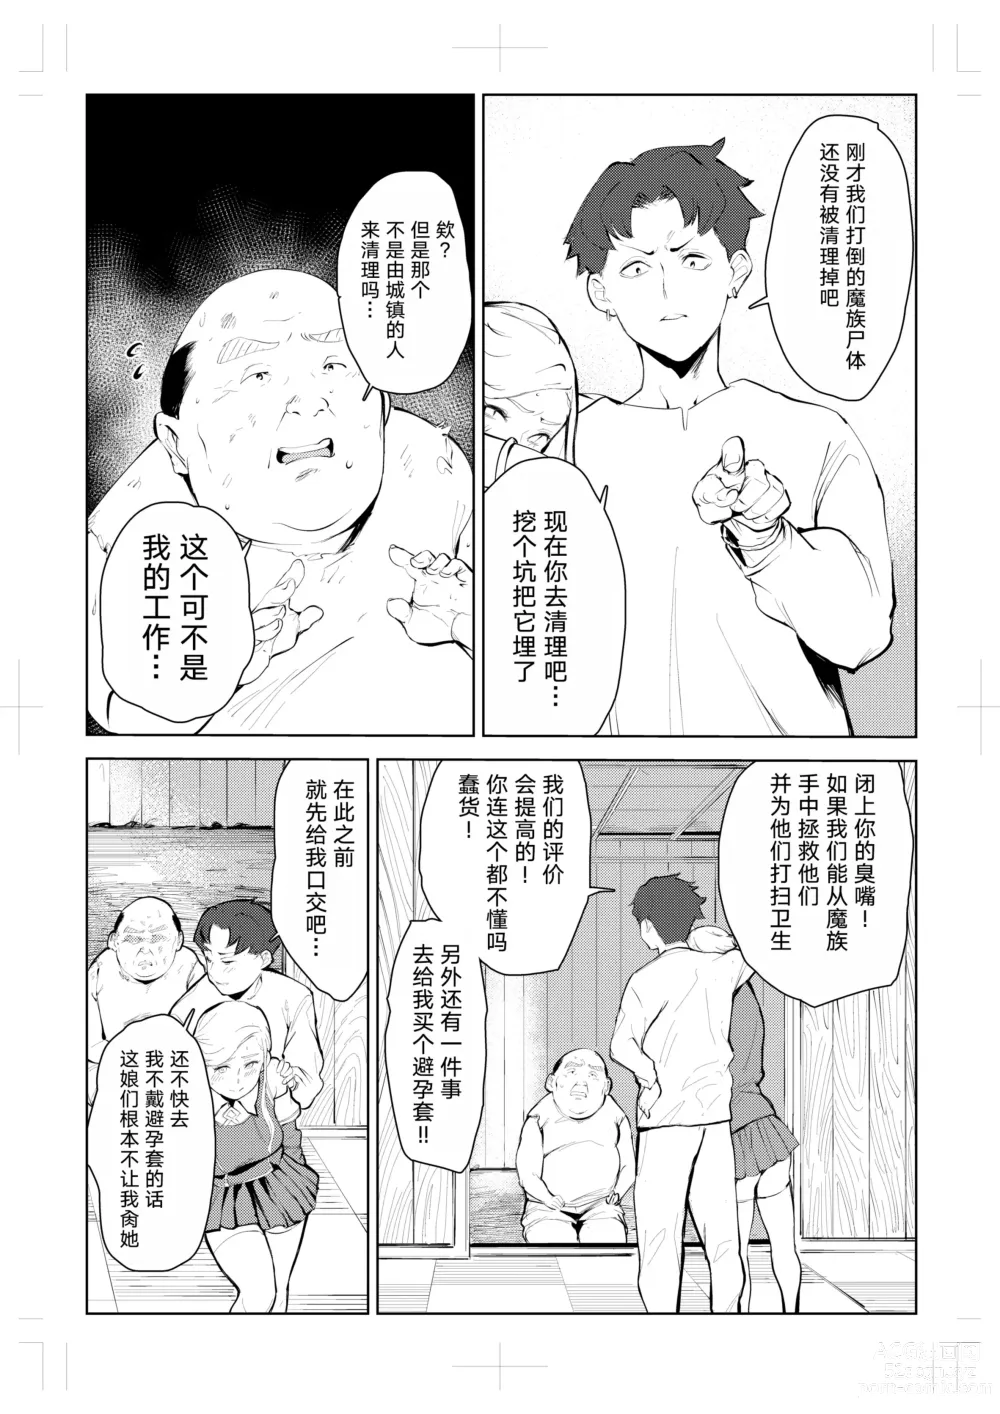 Page 12 of doujinshi 40-sai no Mahoutsukai 0